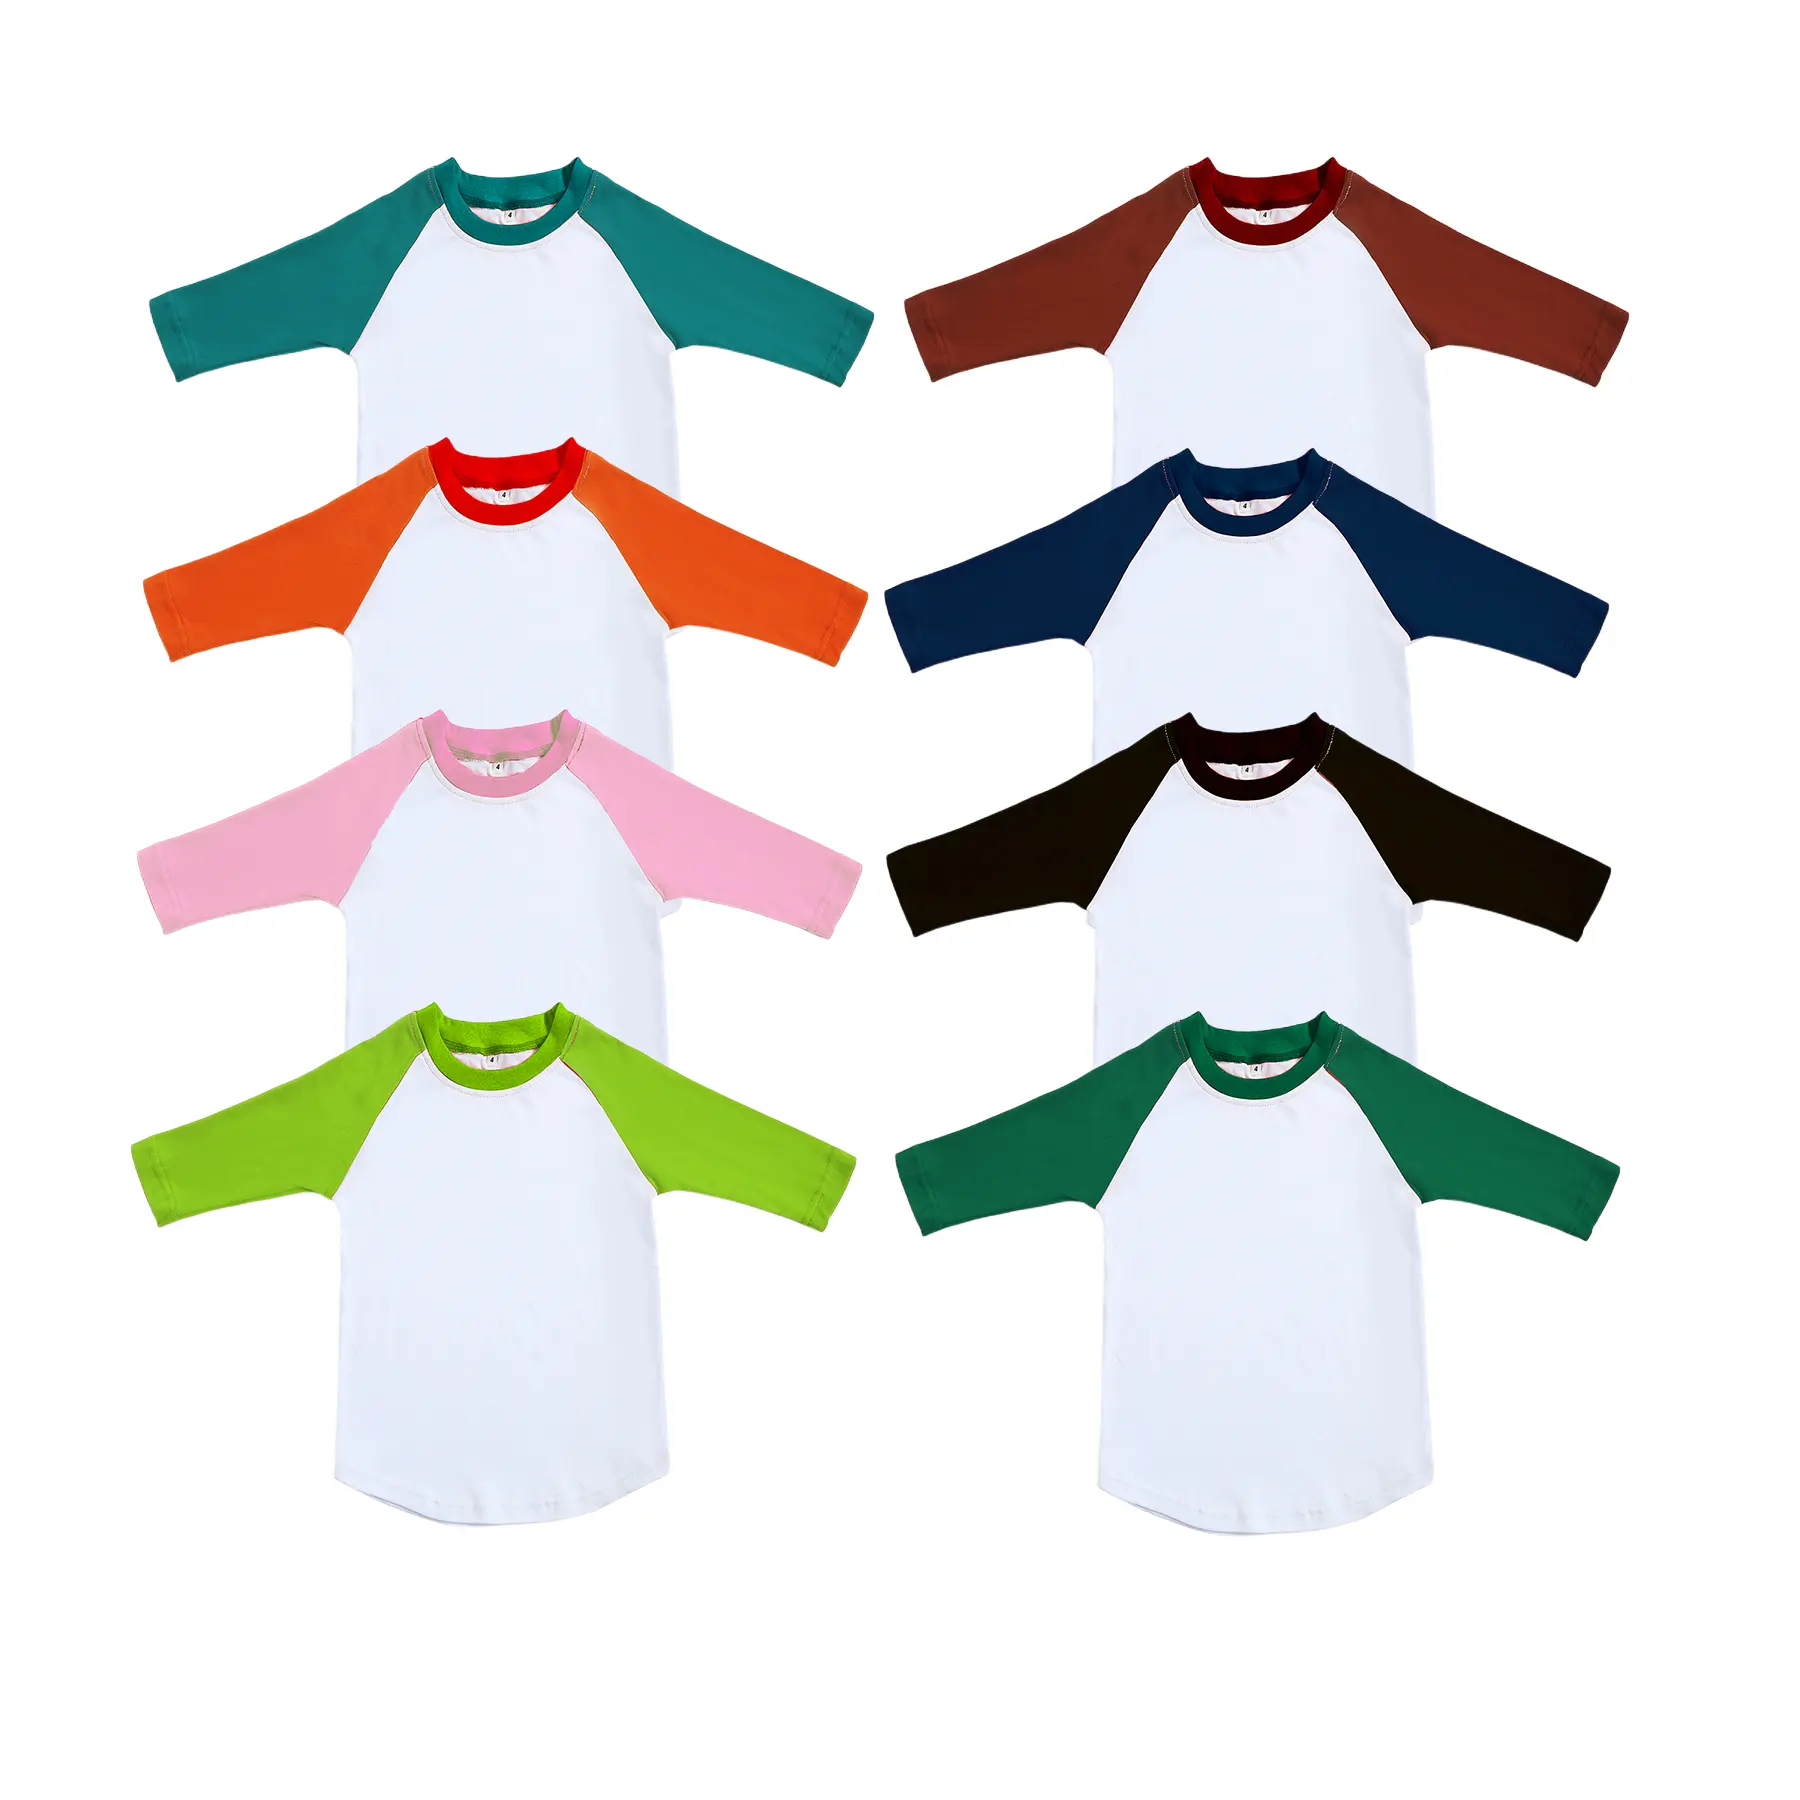 Camiseta raglan unissex, presente de aniversário para menino, 100% algodão, camisetas de beisebol de manga longa